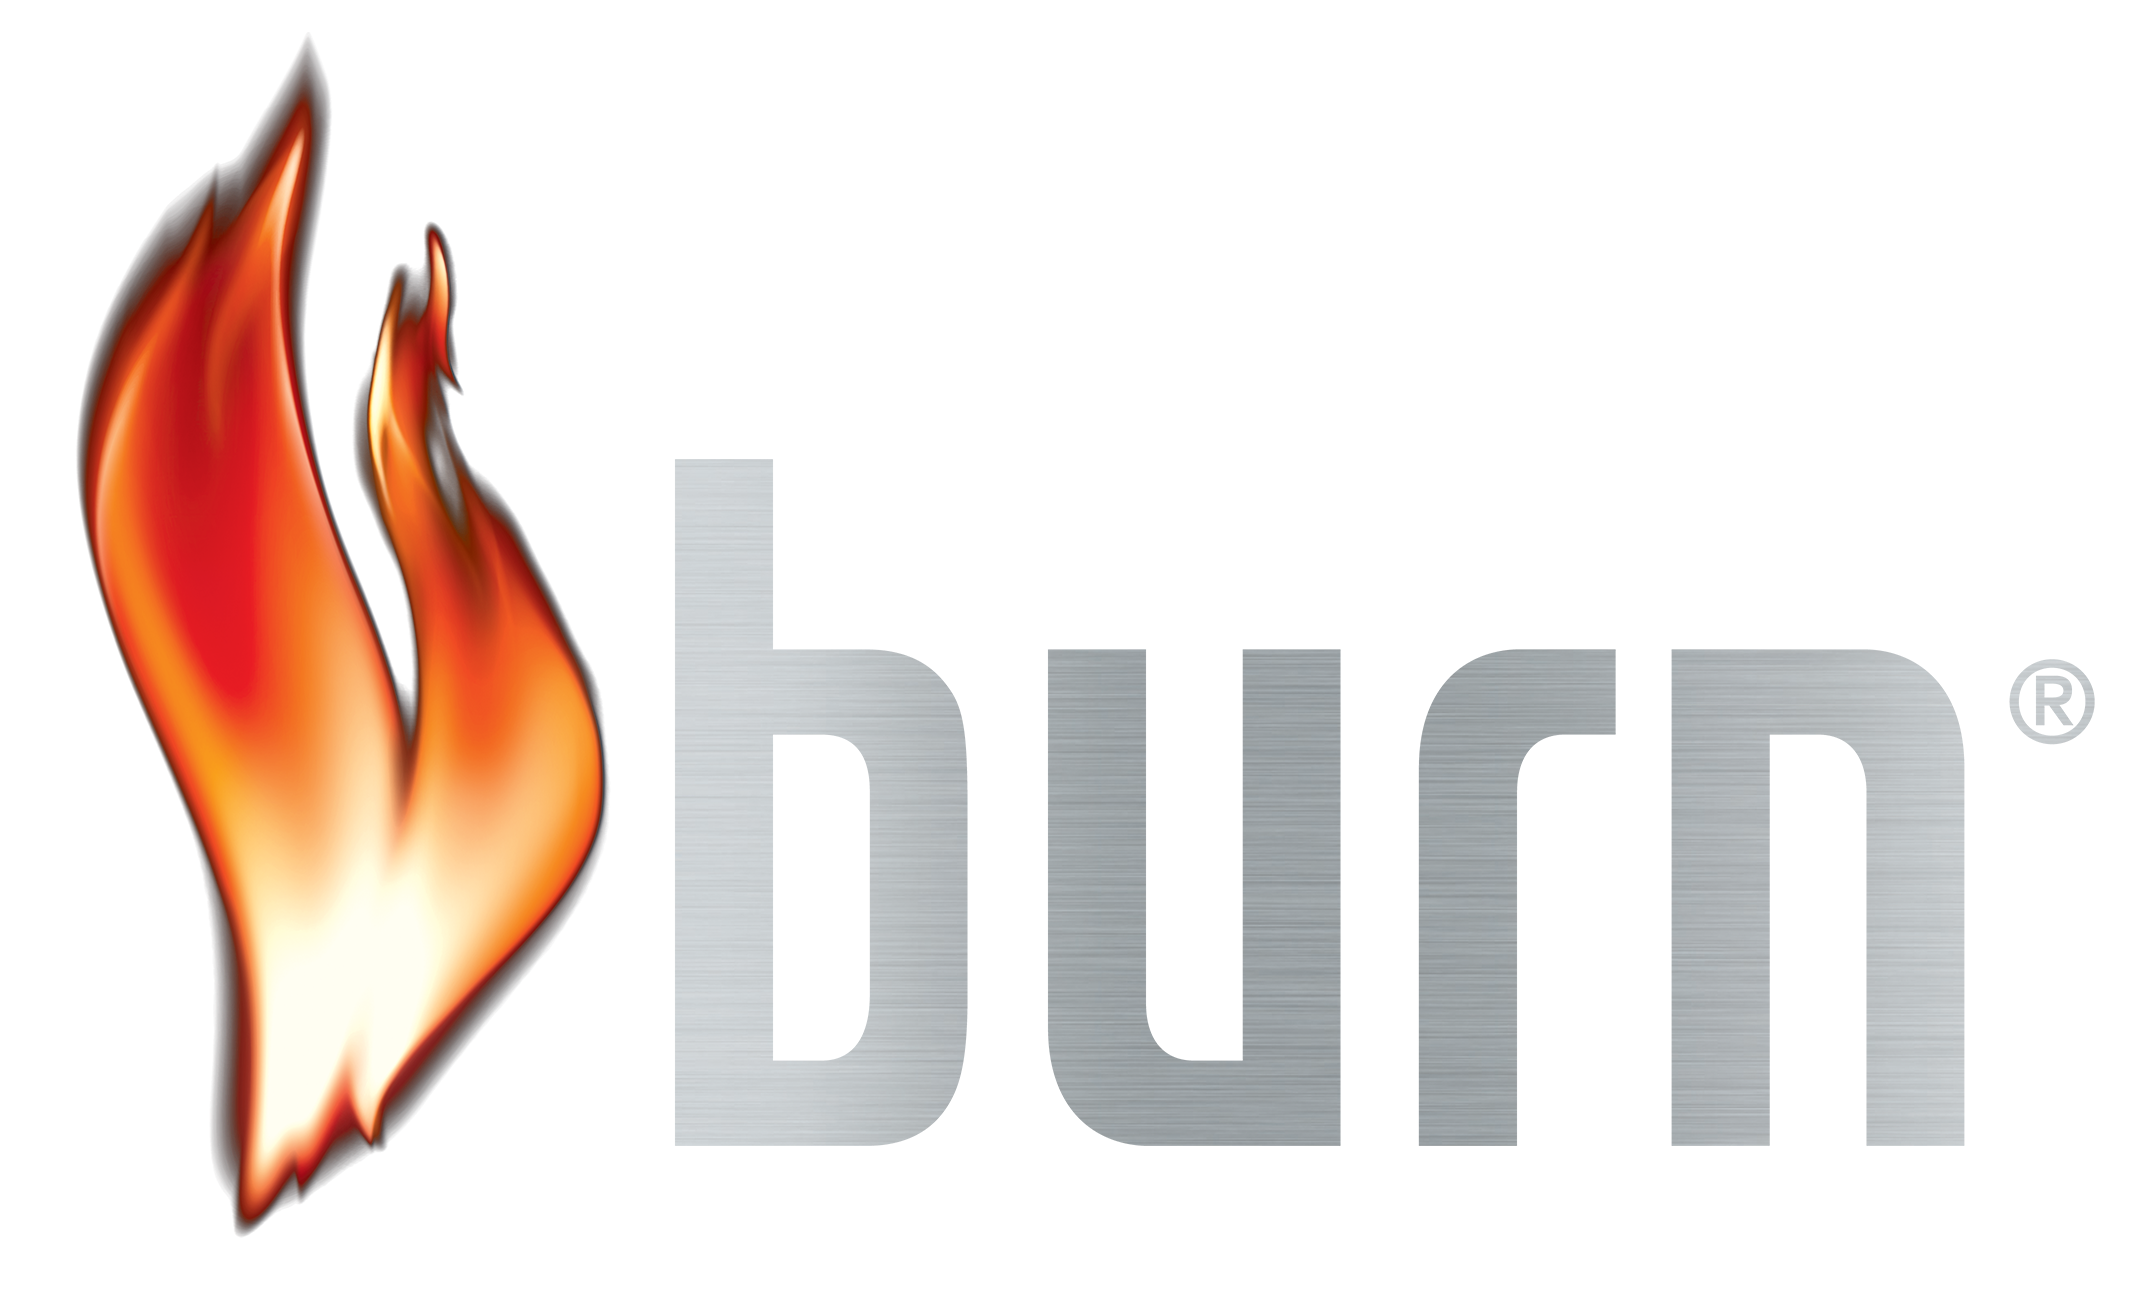 Burn PNG Image Background